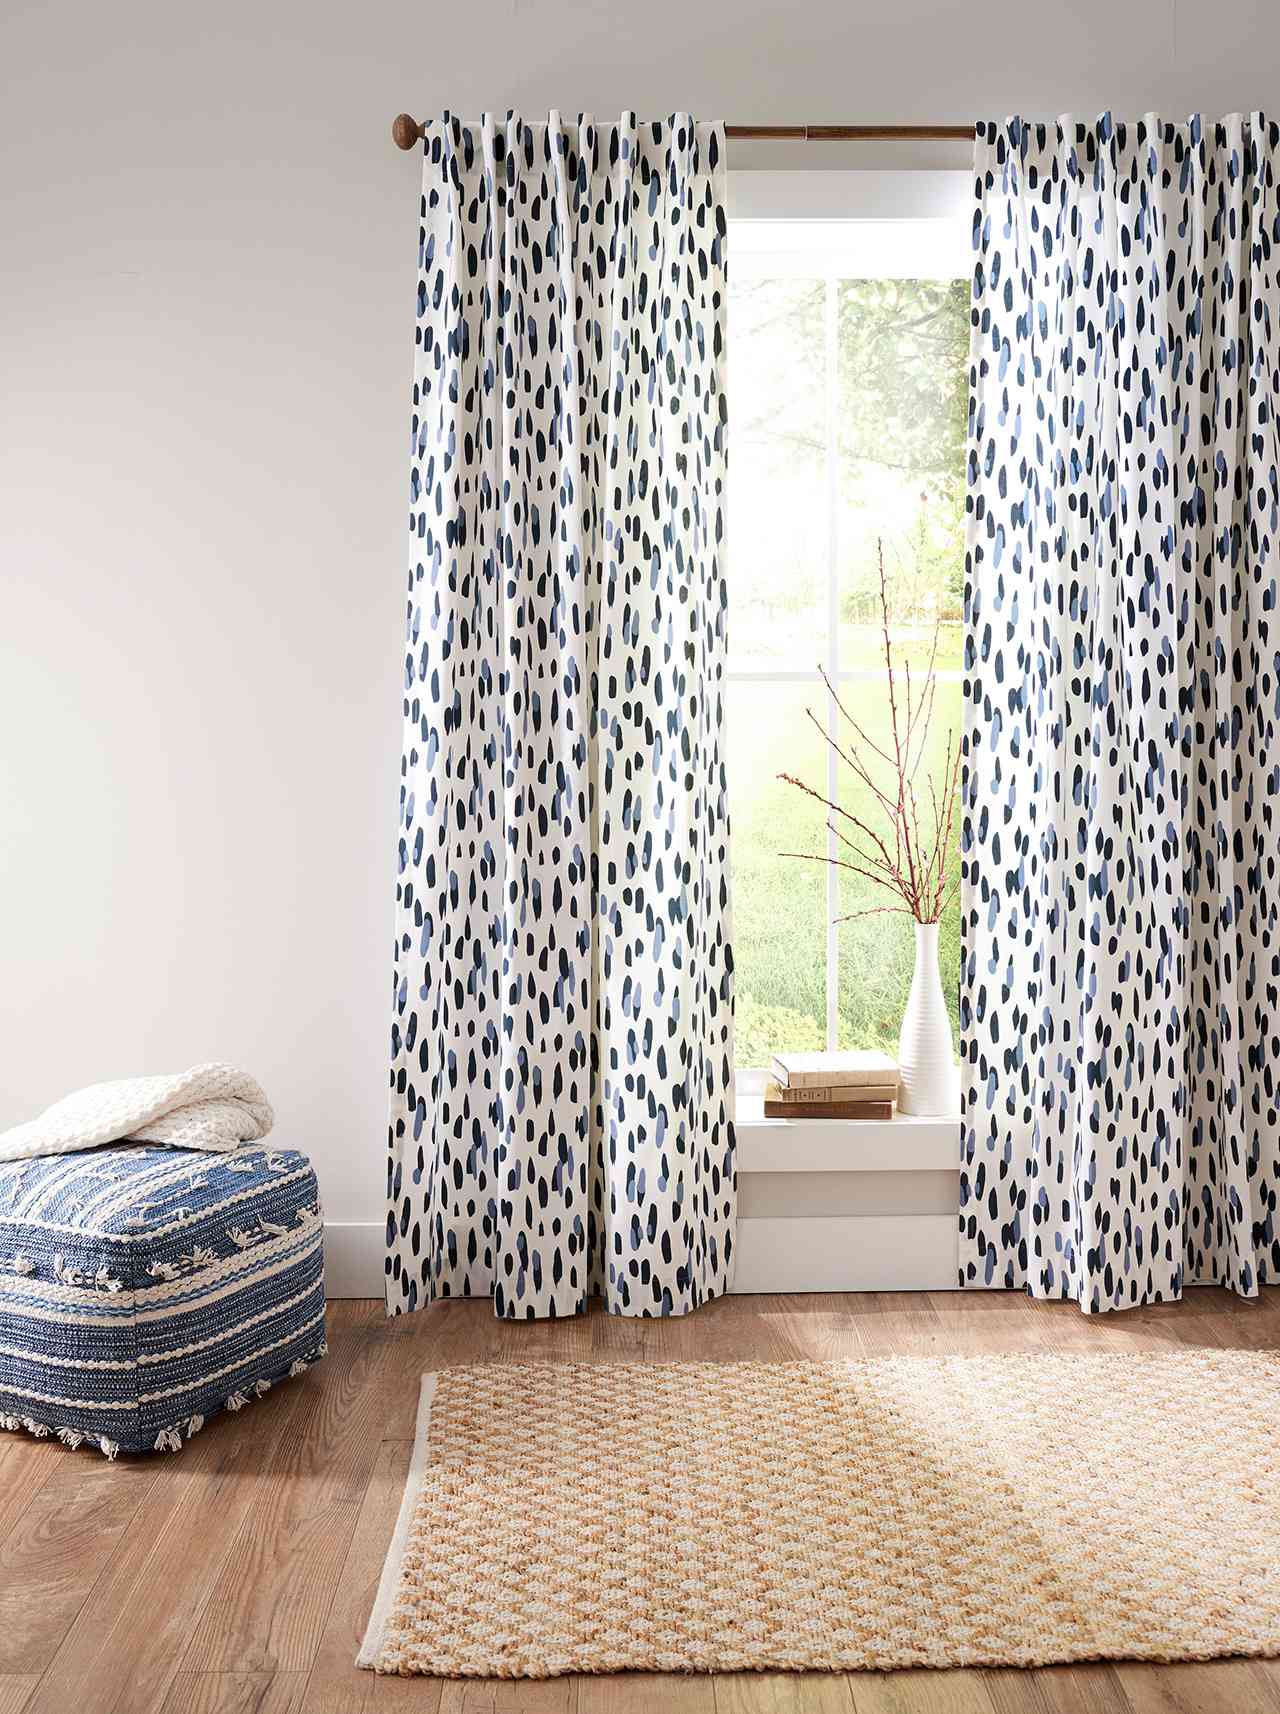 Make DIY Curtain Panels